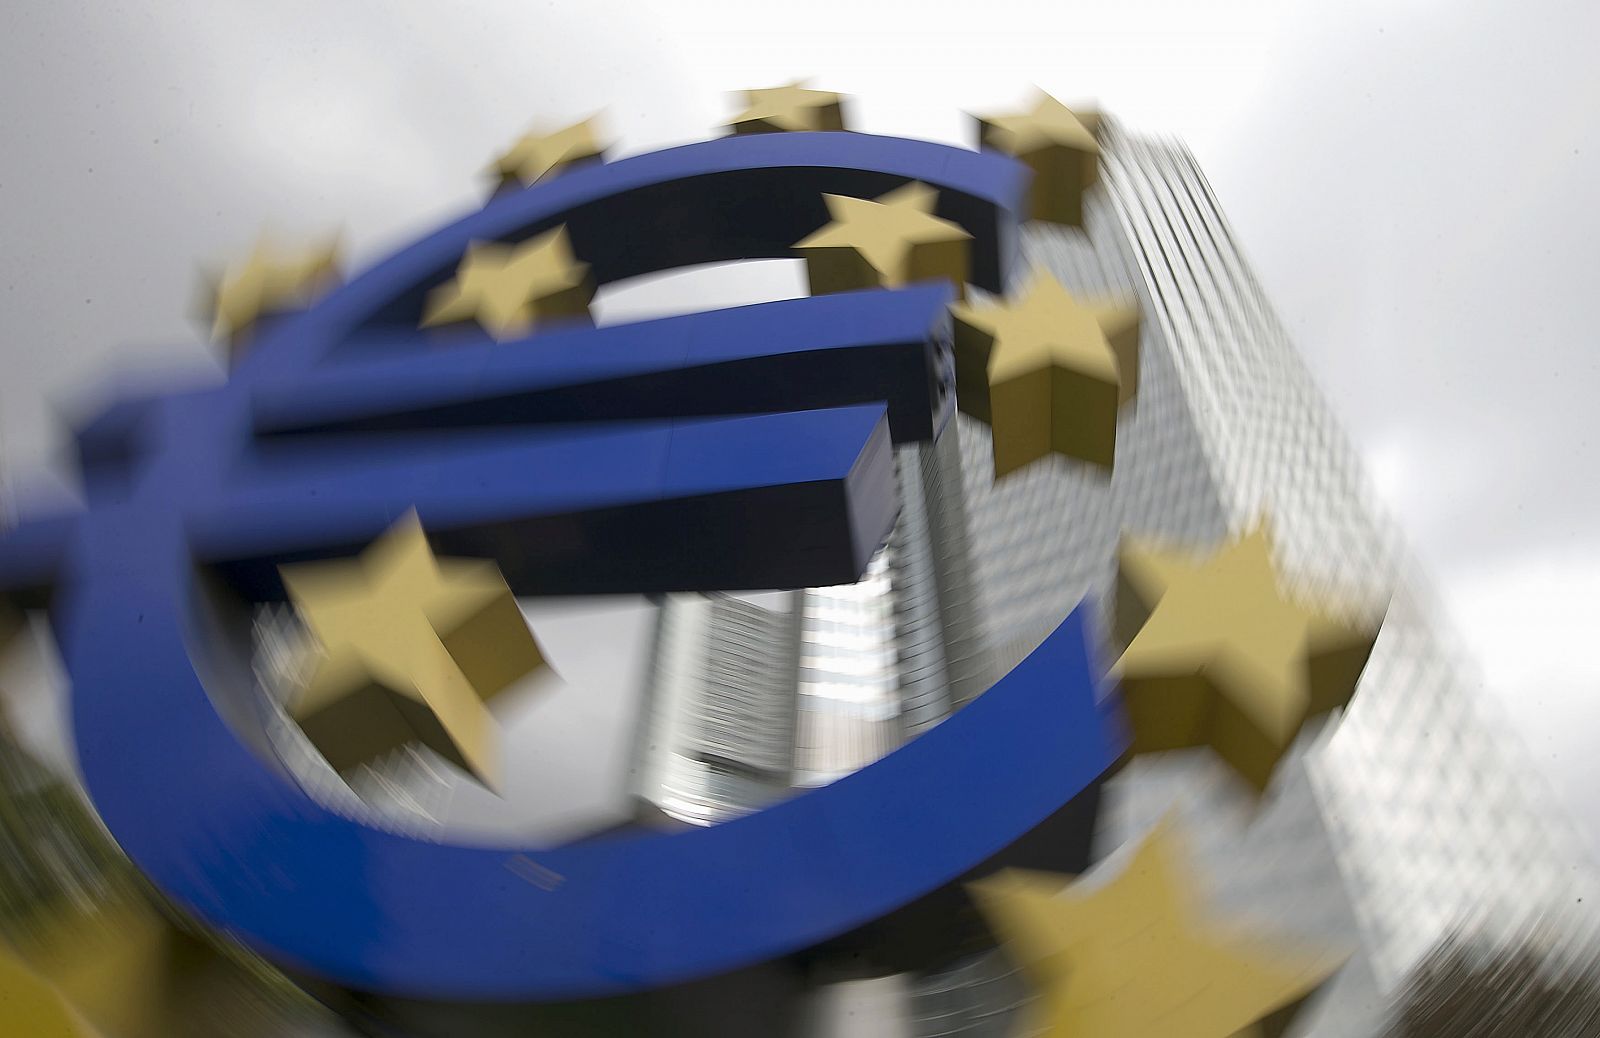 Escultura con el símbolo del euro frente al Banco Central Europeo en Frankfurt